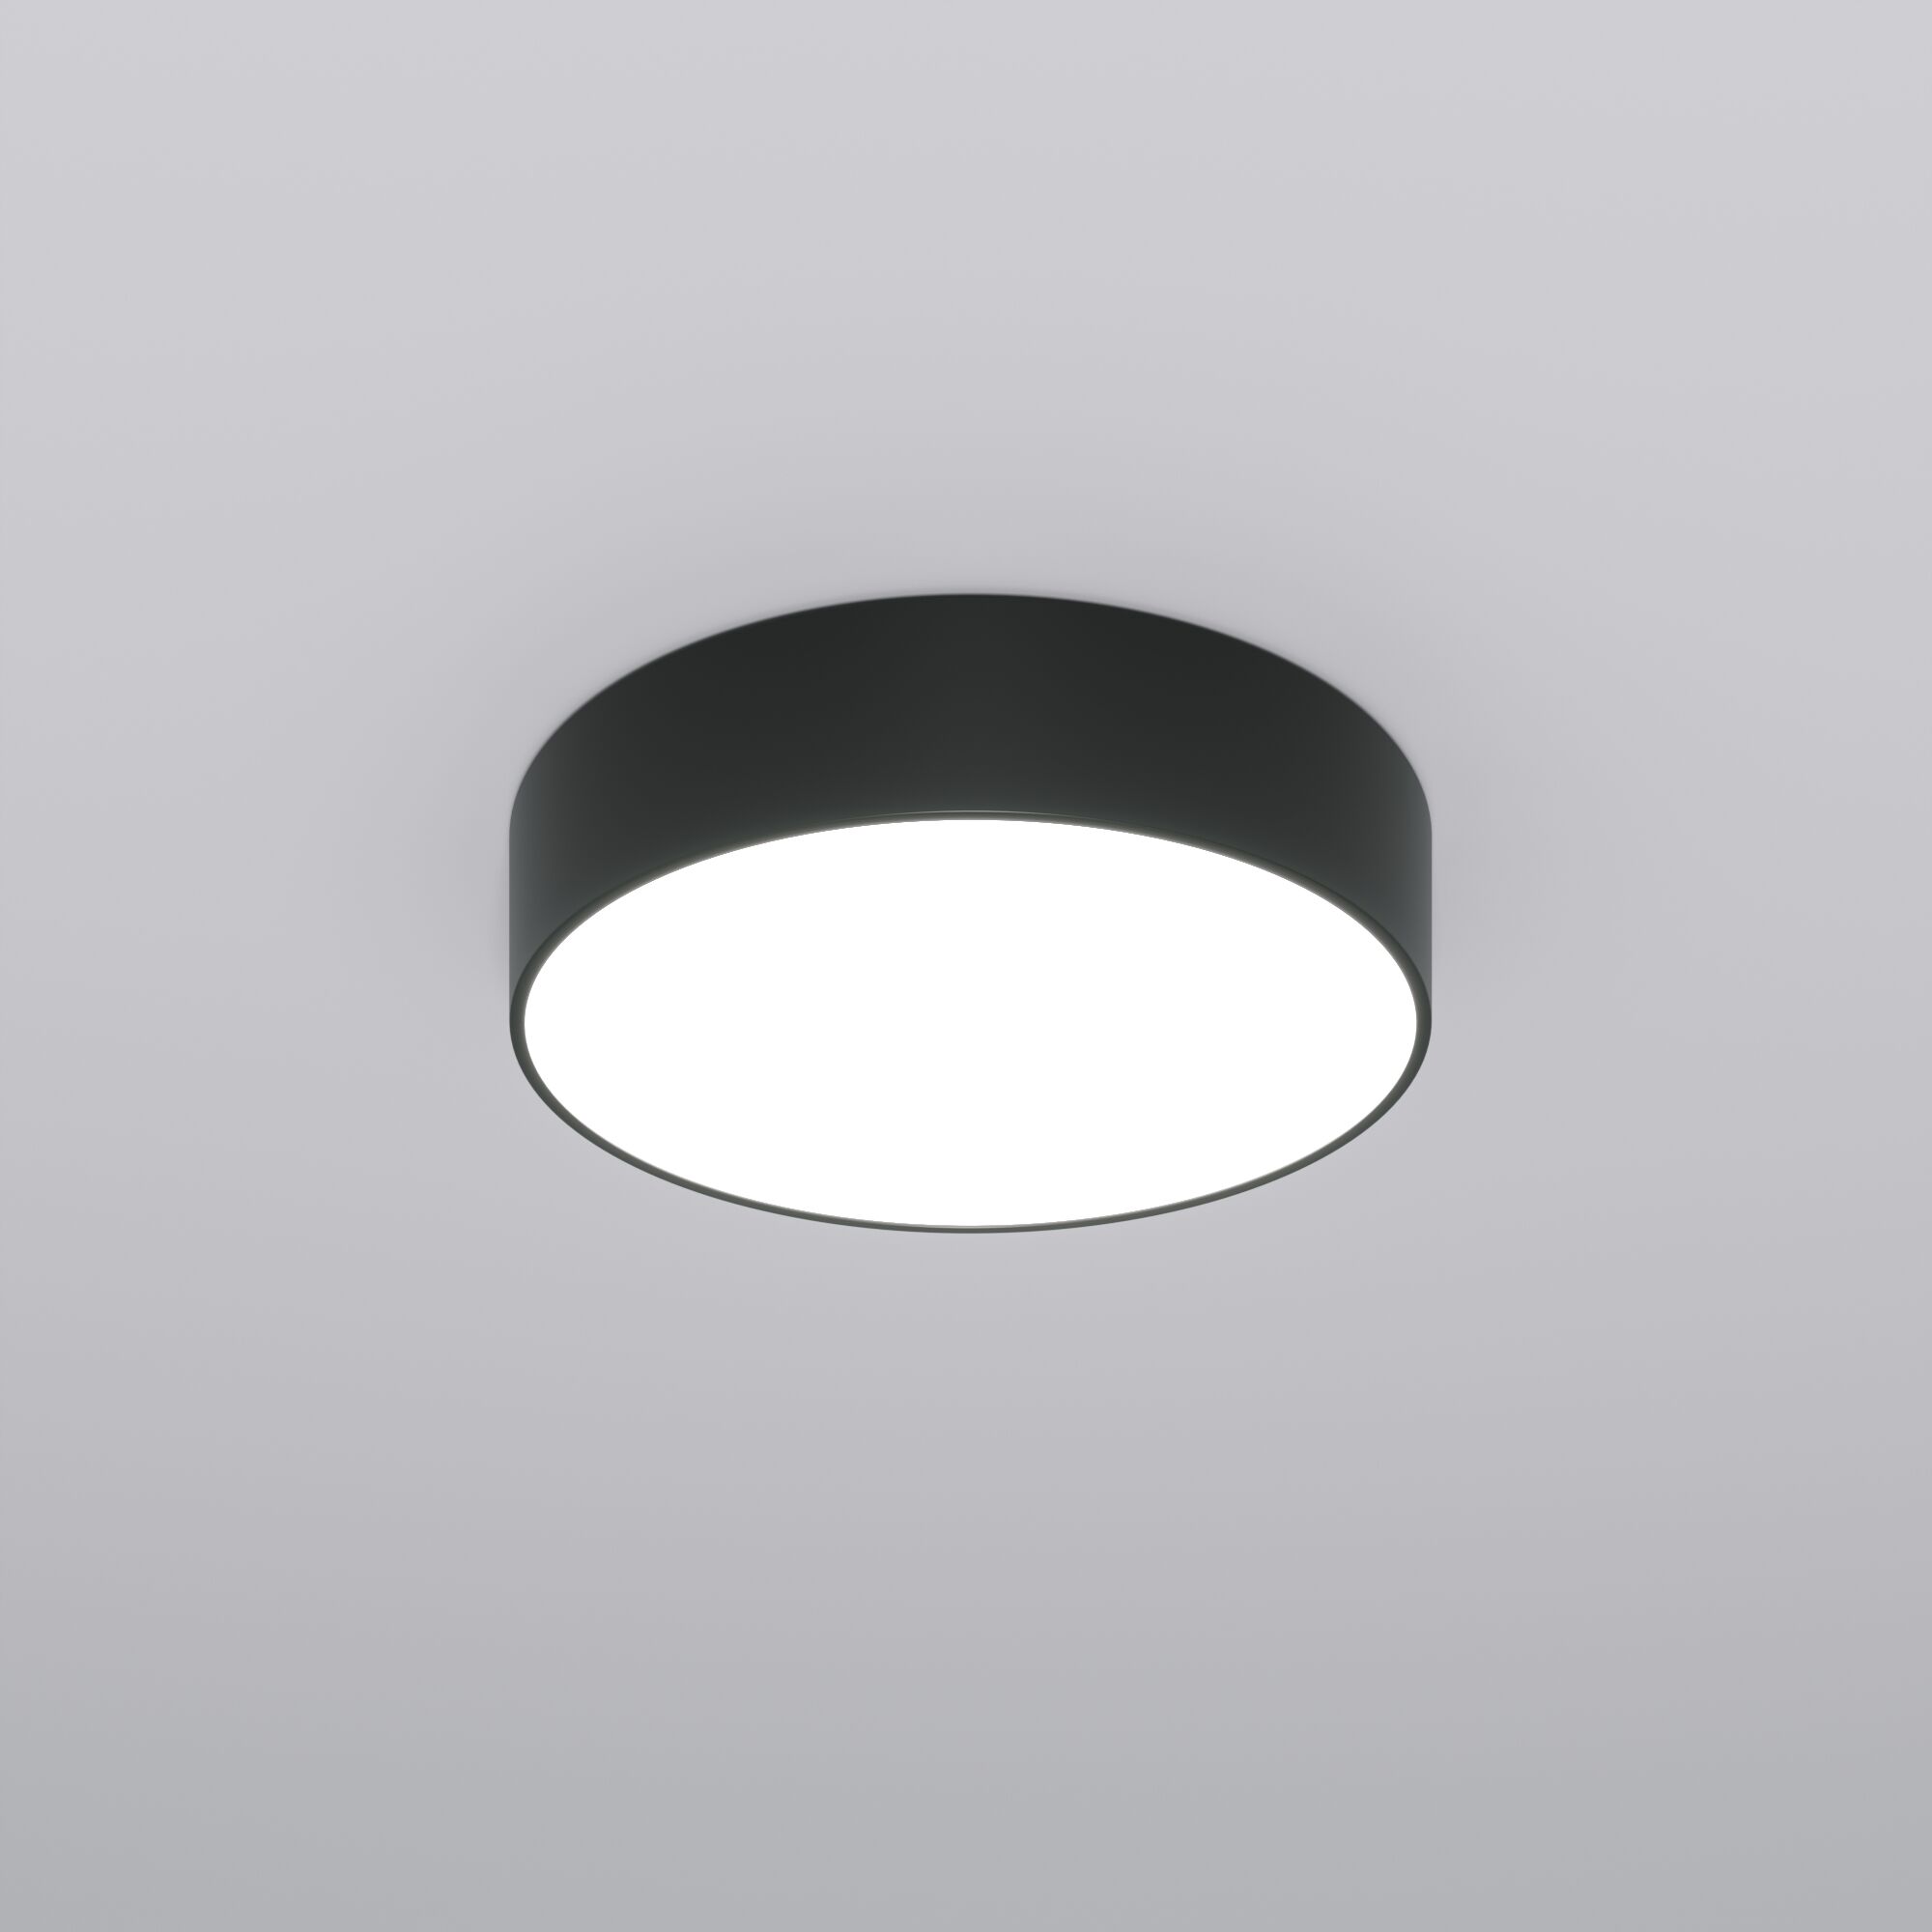 Потолочный светодиодный светильник с регулировкой яркости и цветовой температуры Eurosvet Entire 90318/1 черный. Фото 1